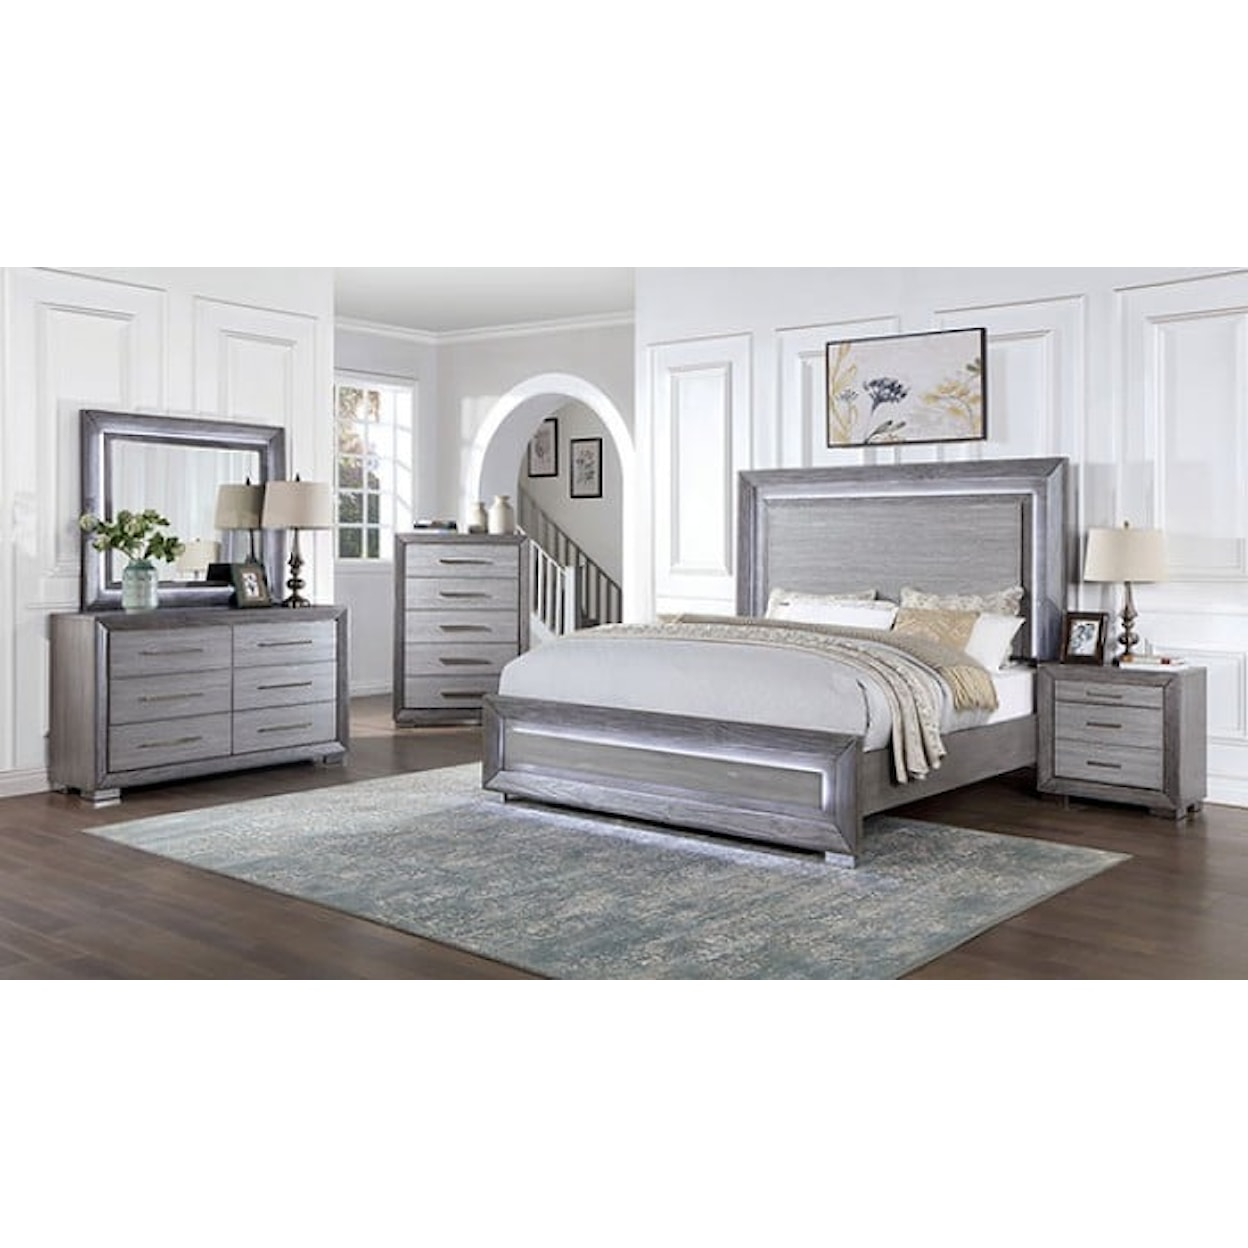 Furniture of America RAIDEN 5-Piece Queen Bedroom Set